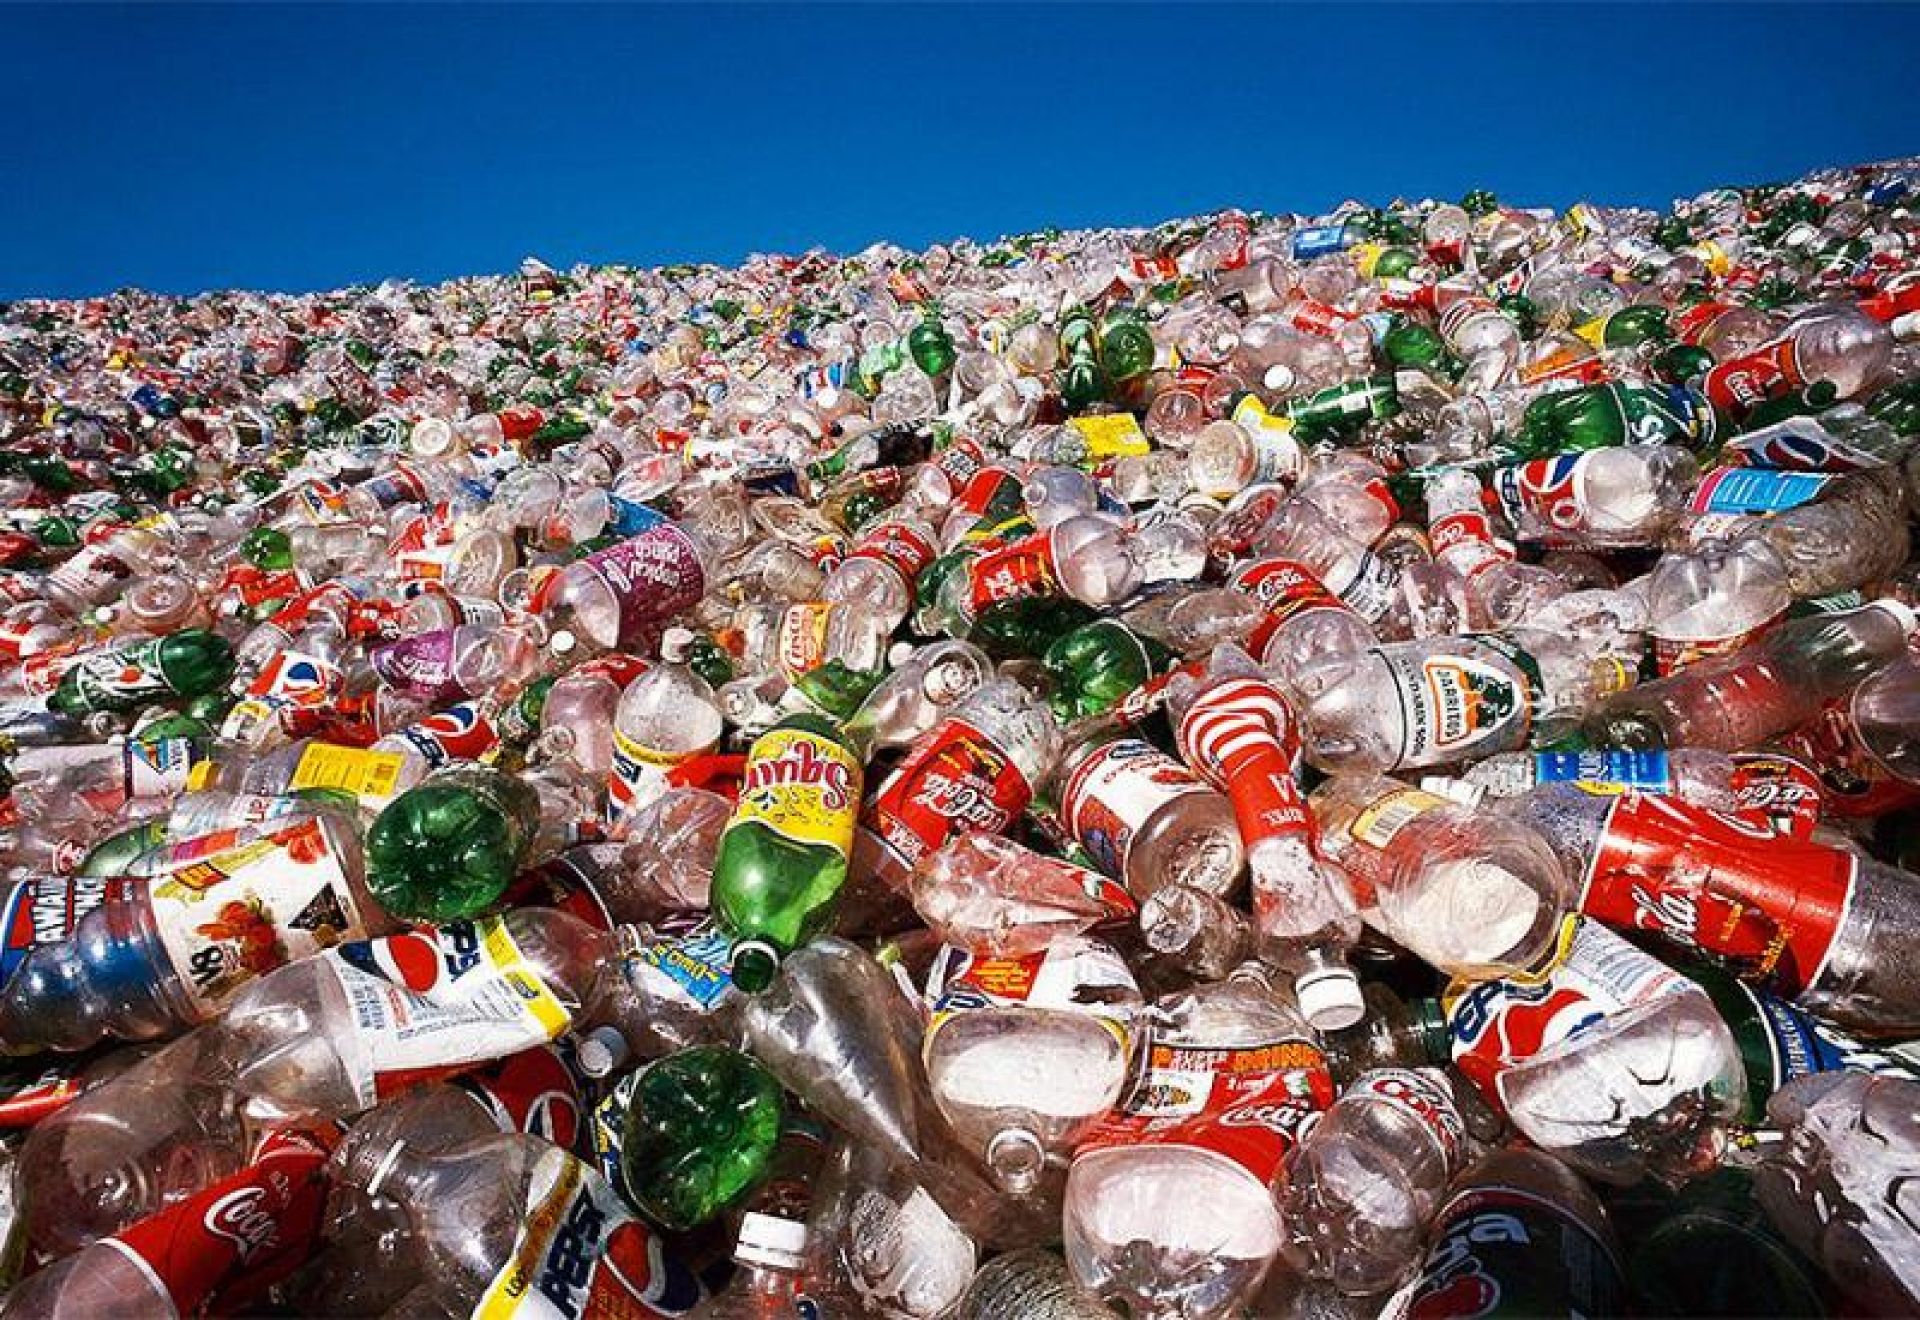 Слишком много произведено пластика: а всякий произведённый товар - это отложенный отход, за который в нынешней ситуации производитель не несёт ответственности